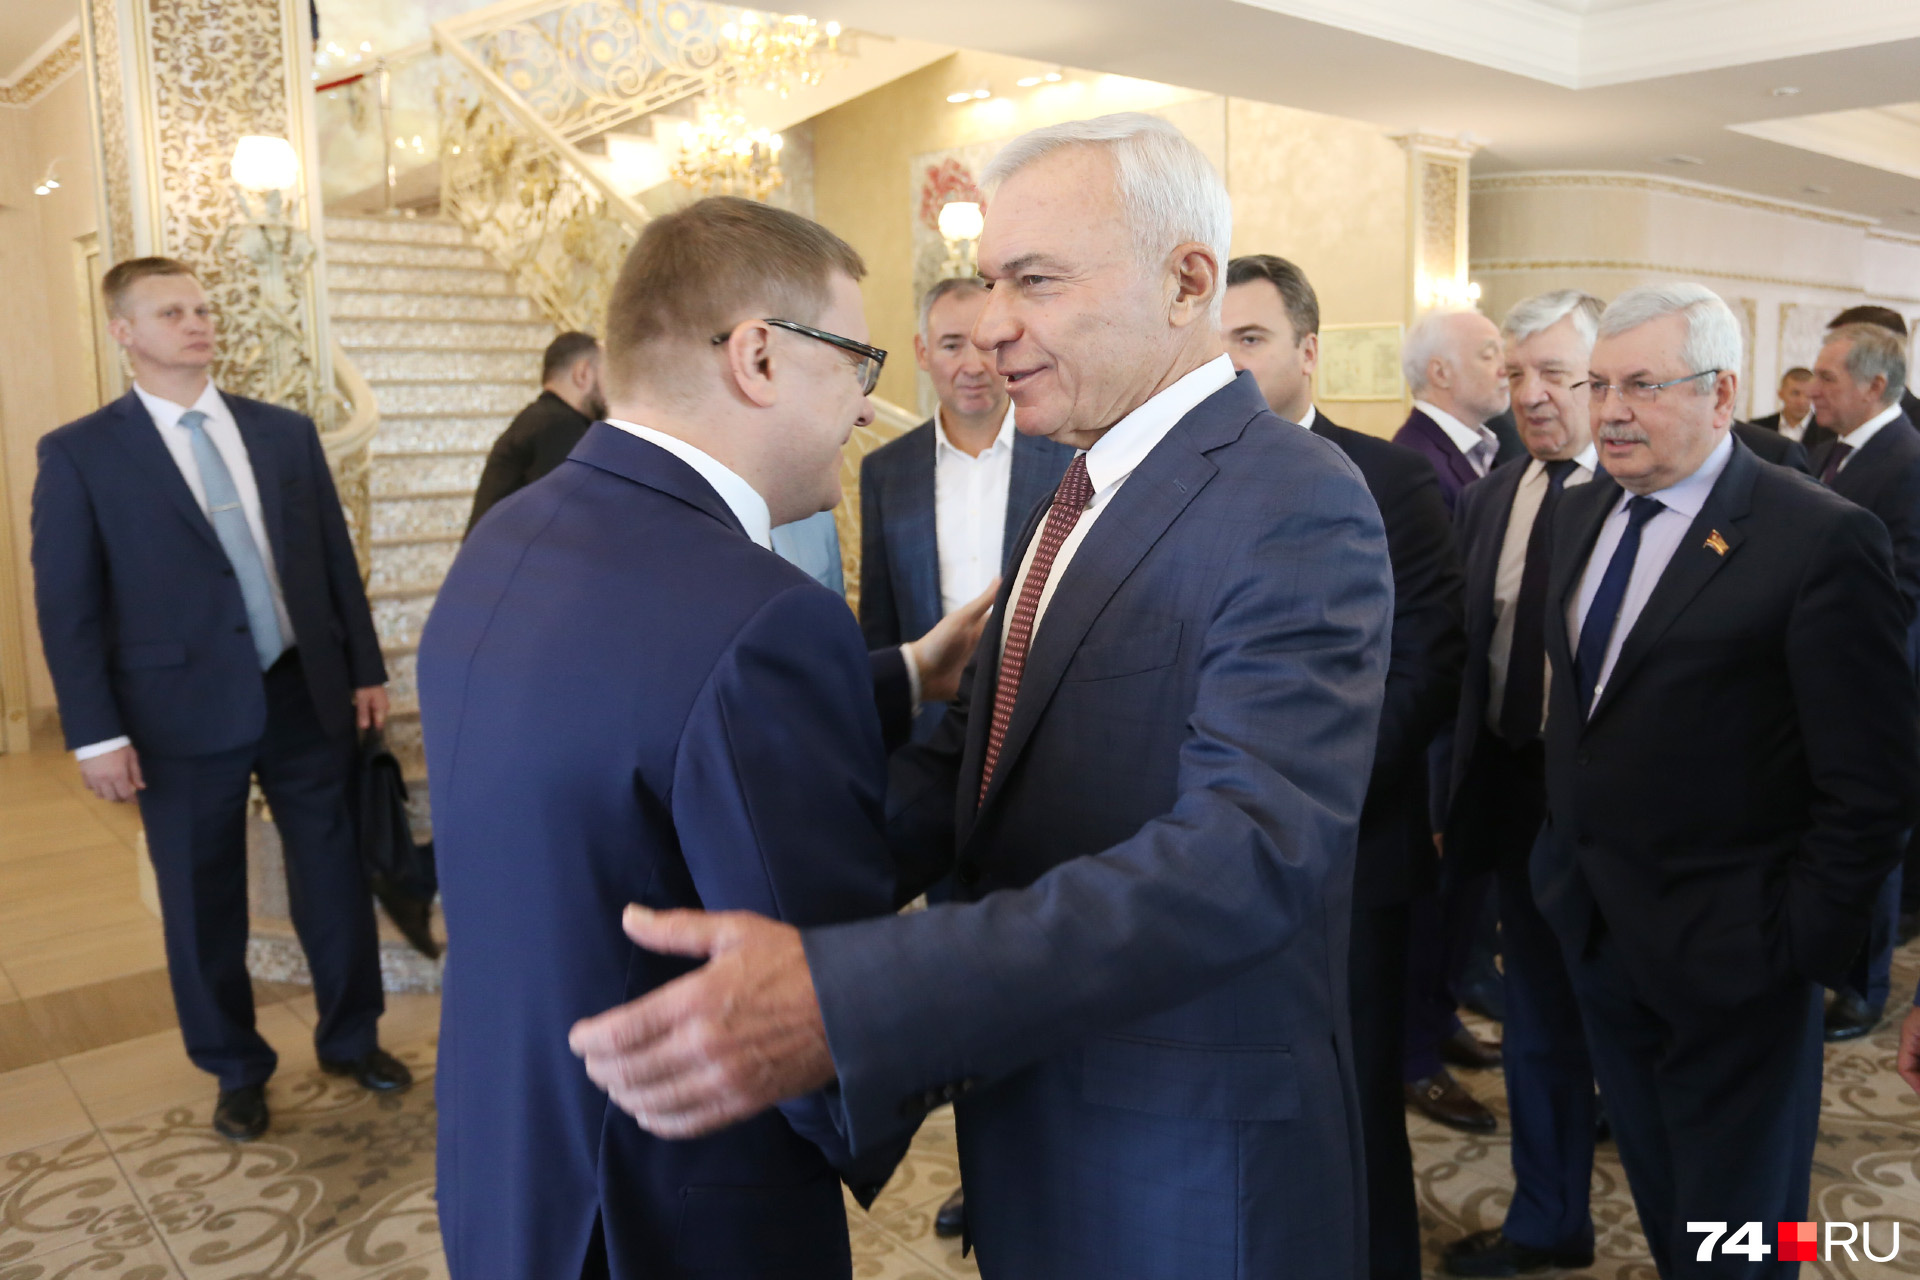 Новый губернатор Алексей Текслер и президент Союза промышленников Виктор Рашников (справа) демонстрировали большую дружбу